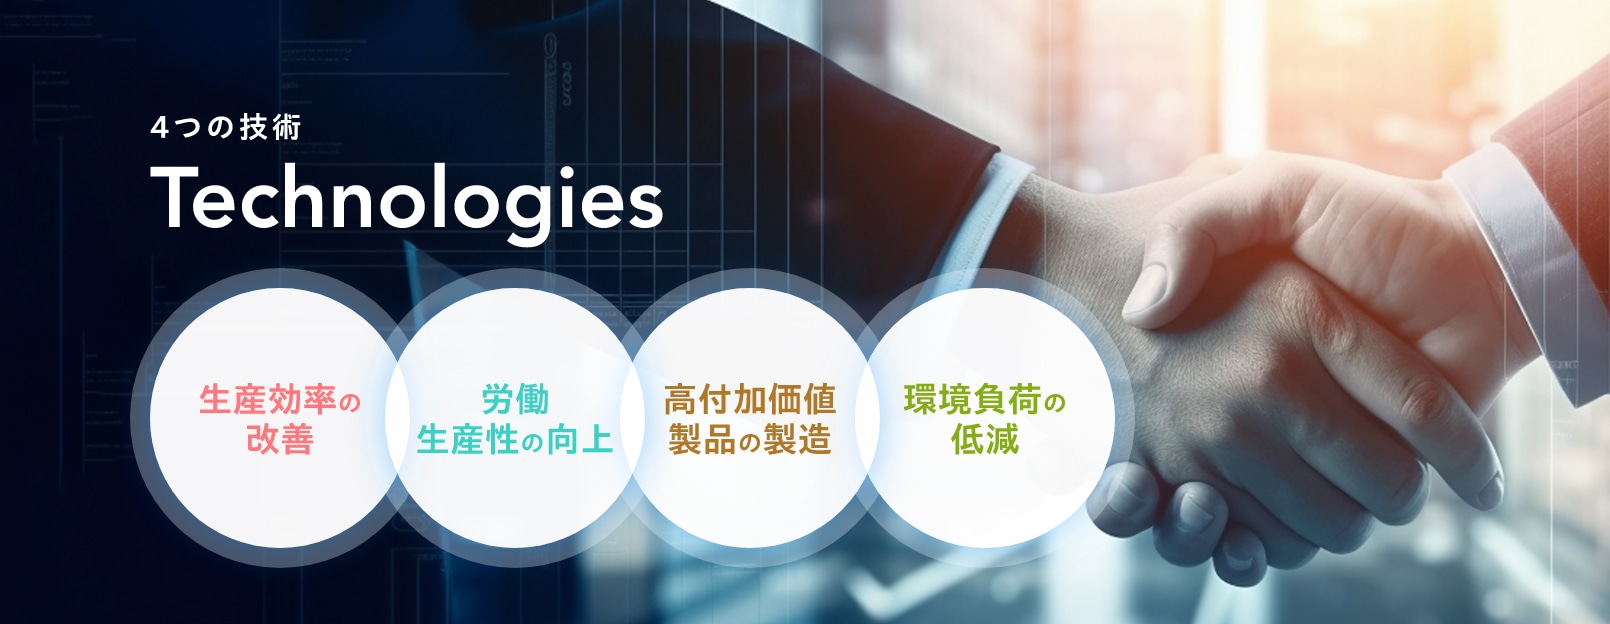 4つの技術 Technologies